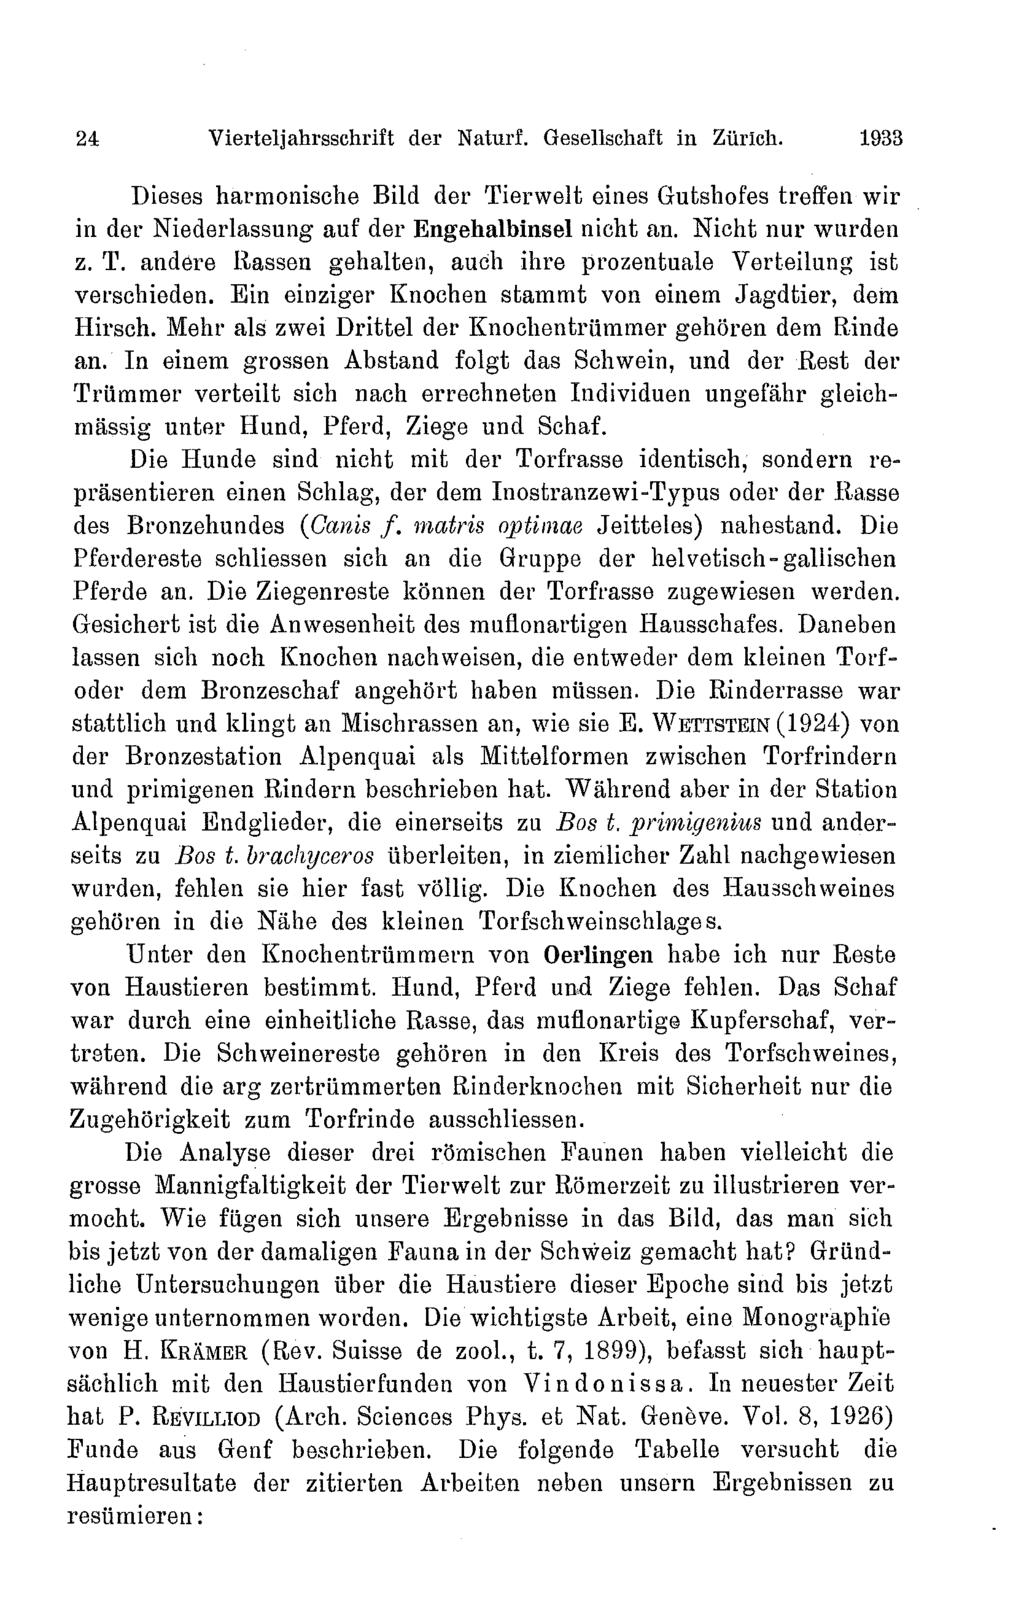 24 Vierteljahrsschrift der Naturf. Gesellschaft in Zürich. 1933 Dieses harmonische Bild der Tierwelt eines Gutshofes treffen wir in der Niederlassnng auf der Engehalbinsel nicht an.